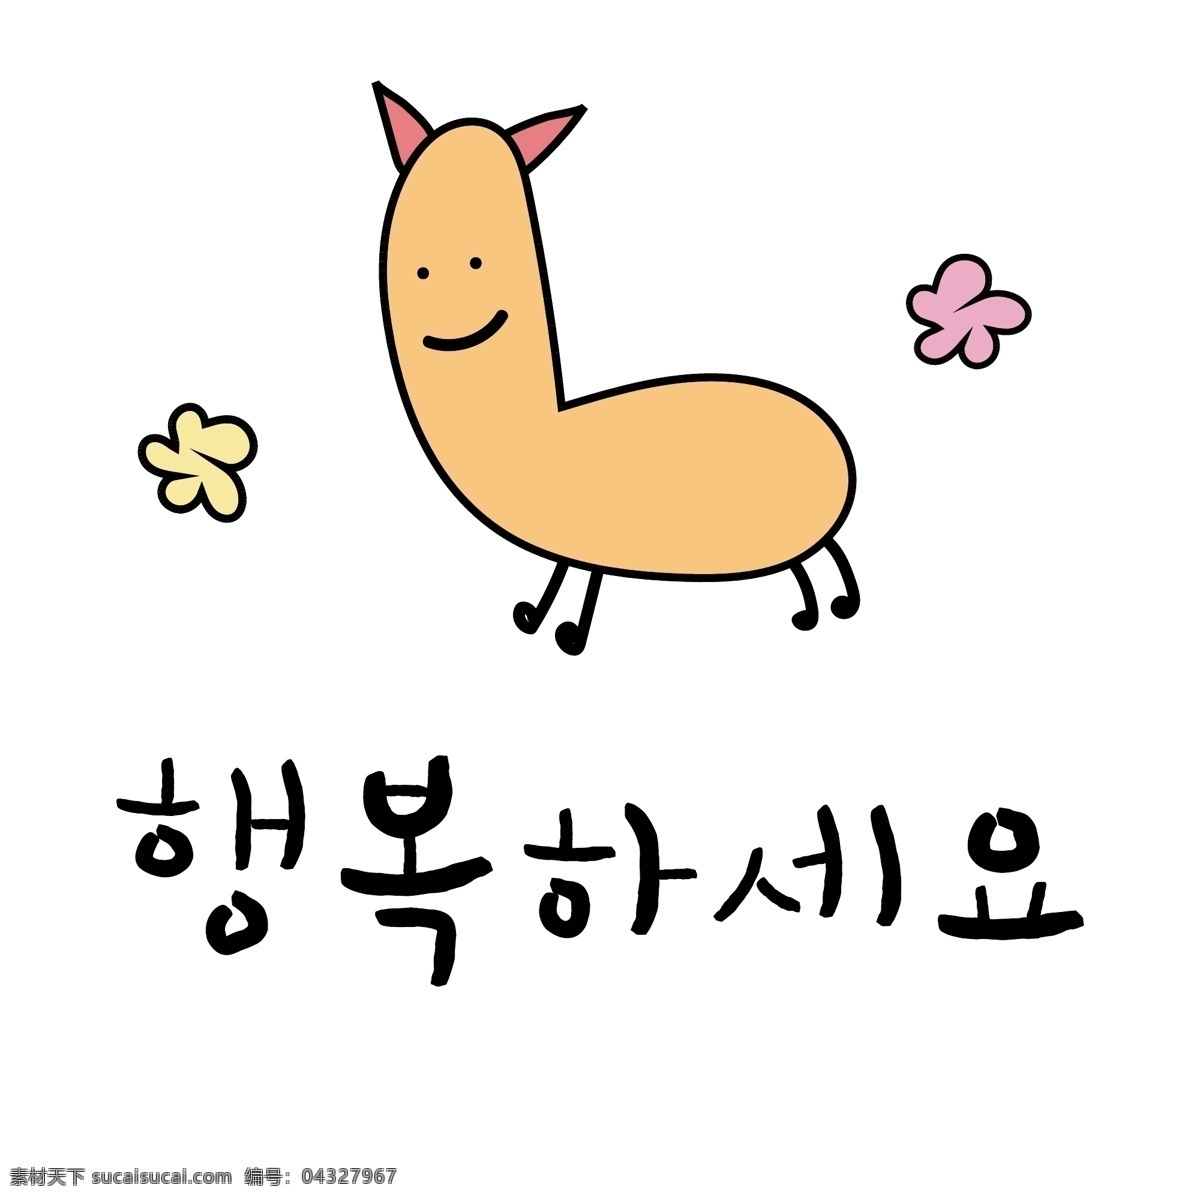 花 韩国 常用语 幸福 肝药 对话 漫画 小的 向量 日常用语 橘黄色 卡通 祝你幸福